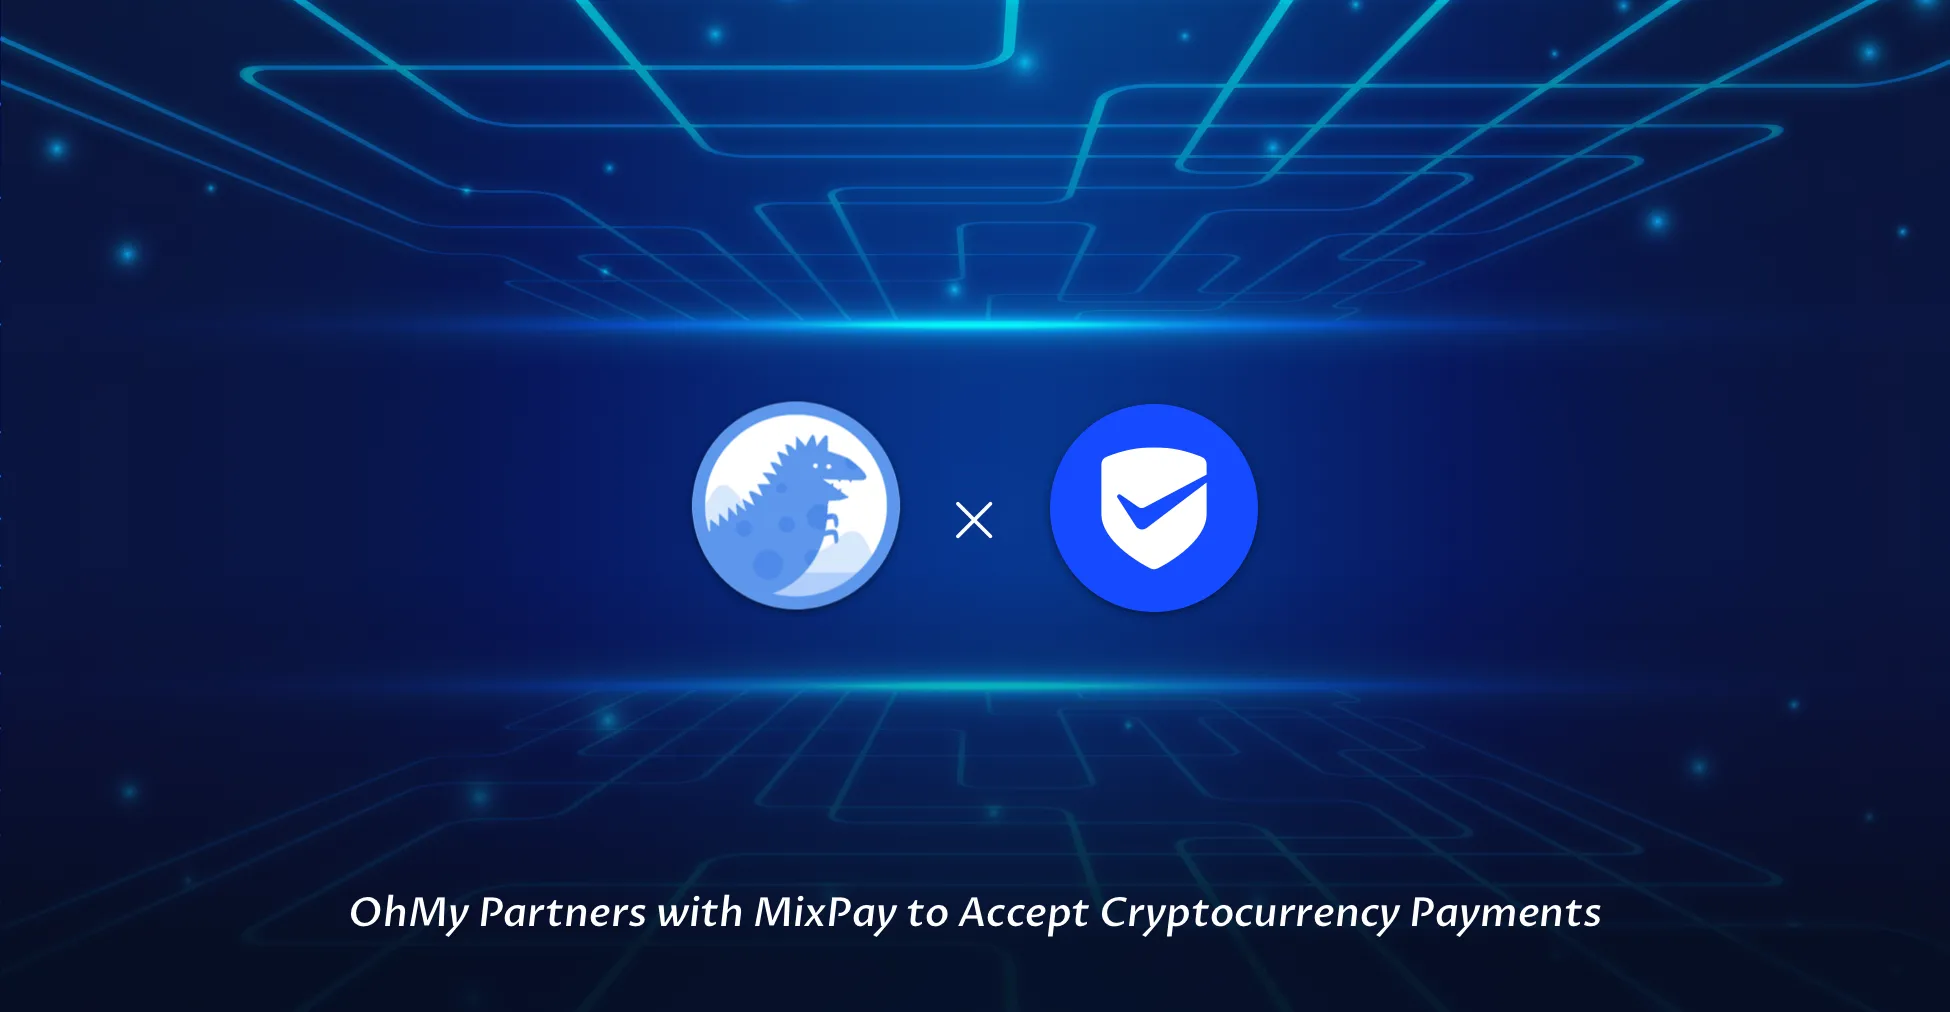 OhMy Partnerség a MixPay-jel a kriptopénzfizetés elfogadására